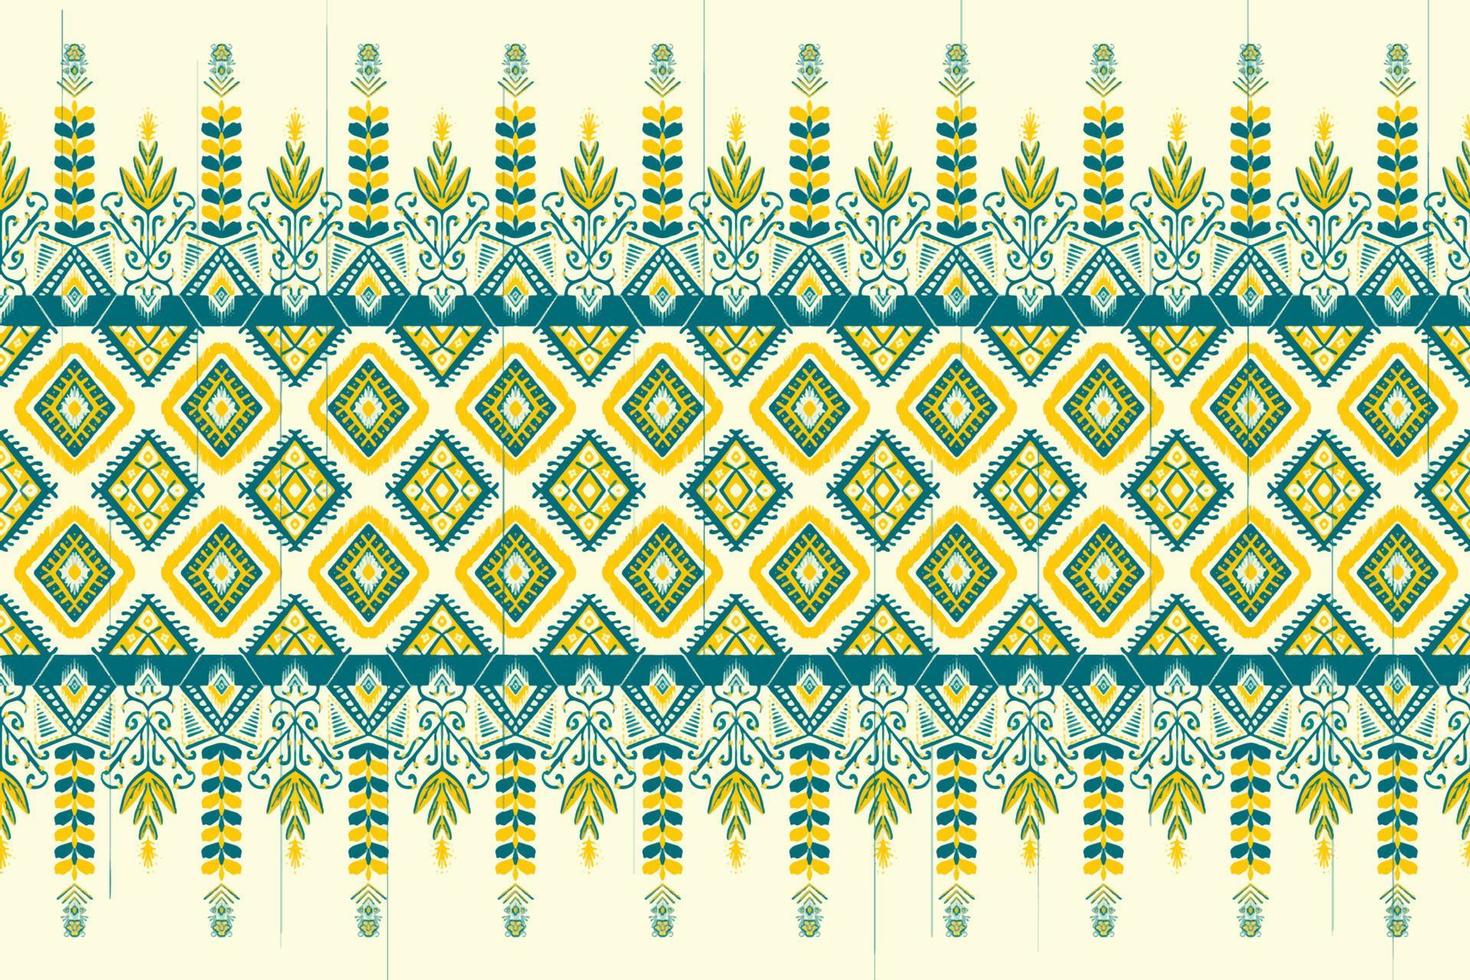 gul och indigoblå blomma på elfenben. geometriskt etniskt orientaliskt mönster traditionell design för bakgrund, matta, tapeter, kläder, omslag, batik, tyg, vektorillustration broderistil vektor